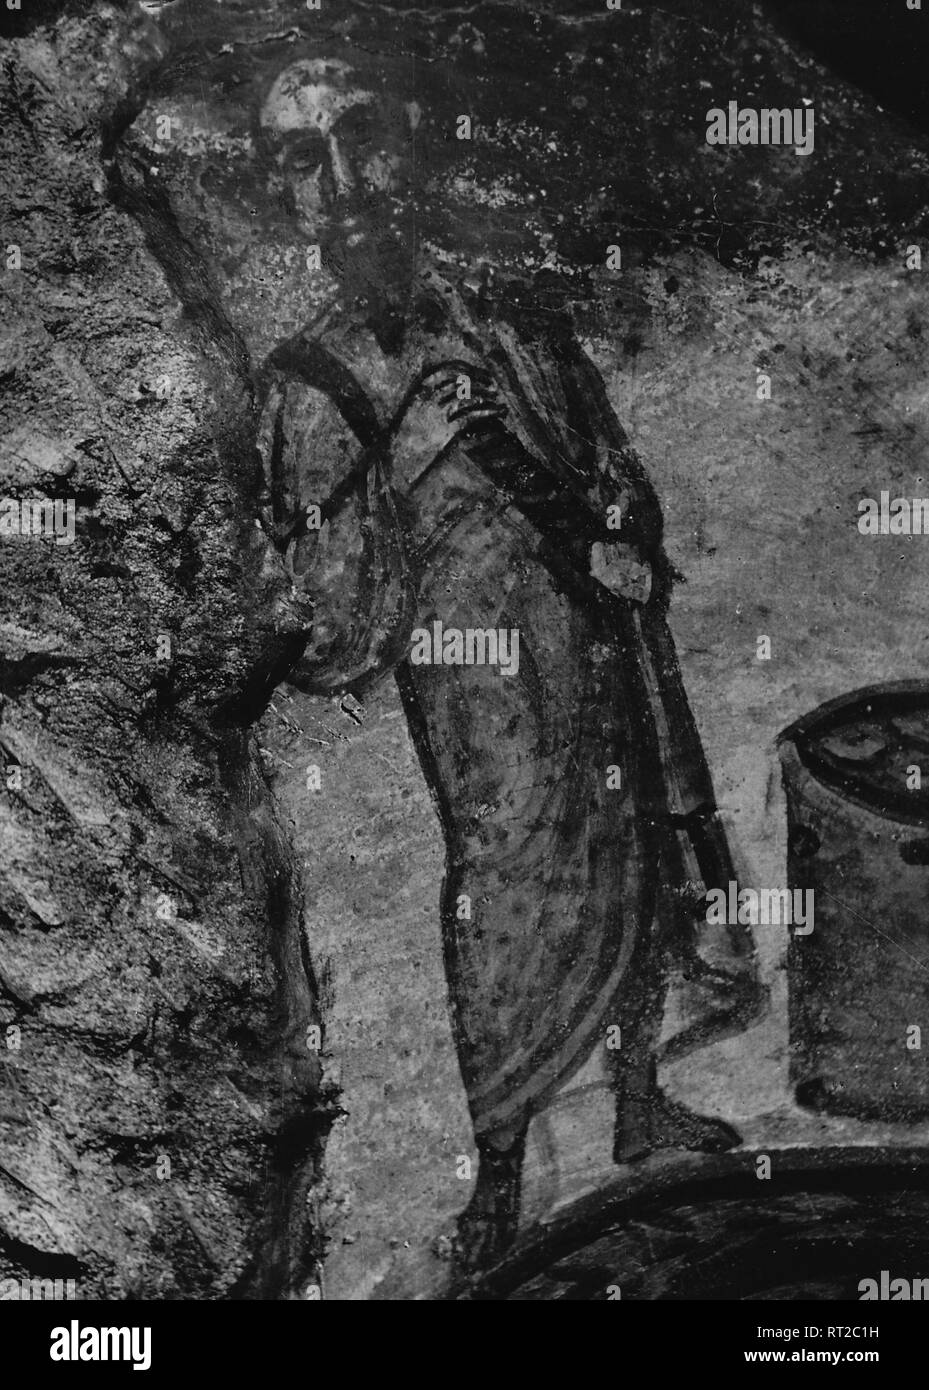 Erich Andres Italien - In den Katakomben von Rom in den 1950er Jahren: eine alte Darstellung des Apostels Paulus in der Domitilla Katakombe. 511/15 Stock Photo